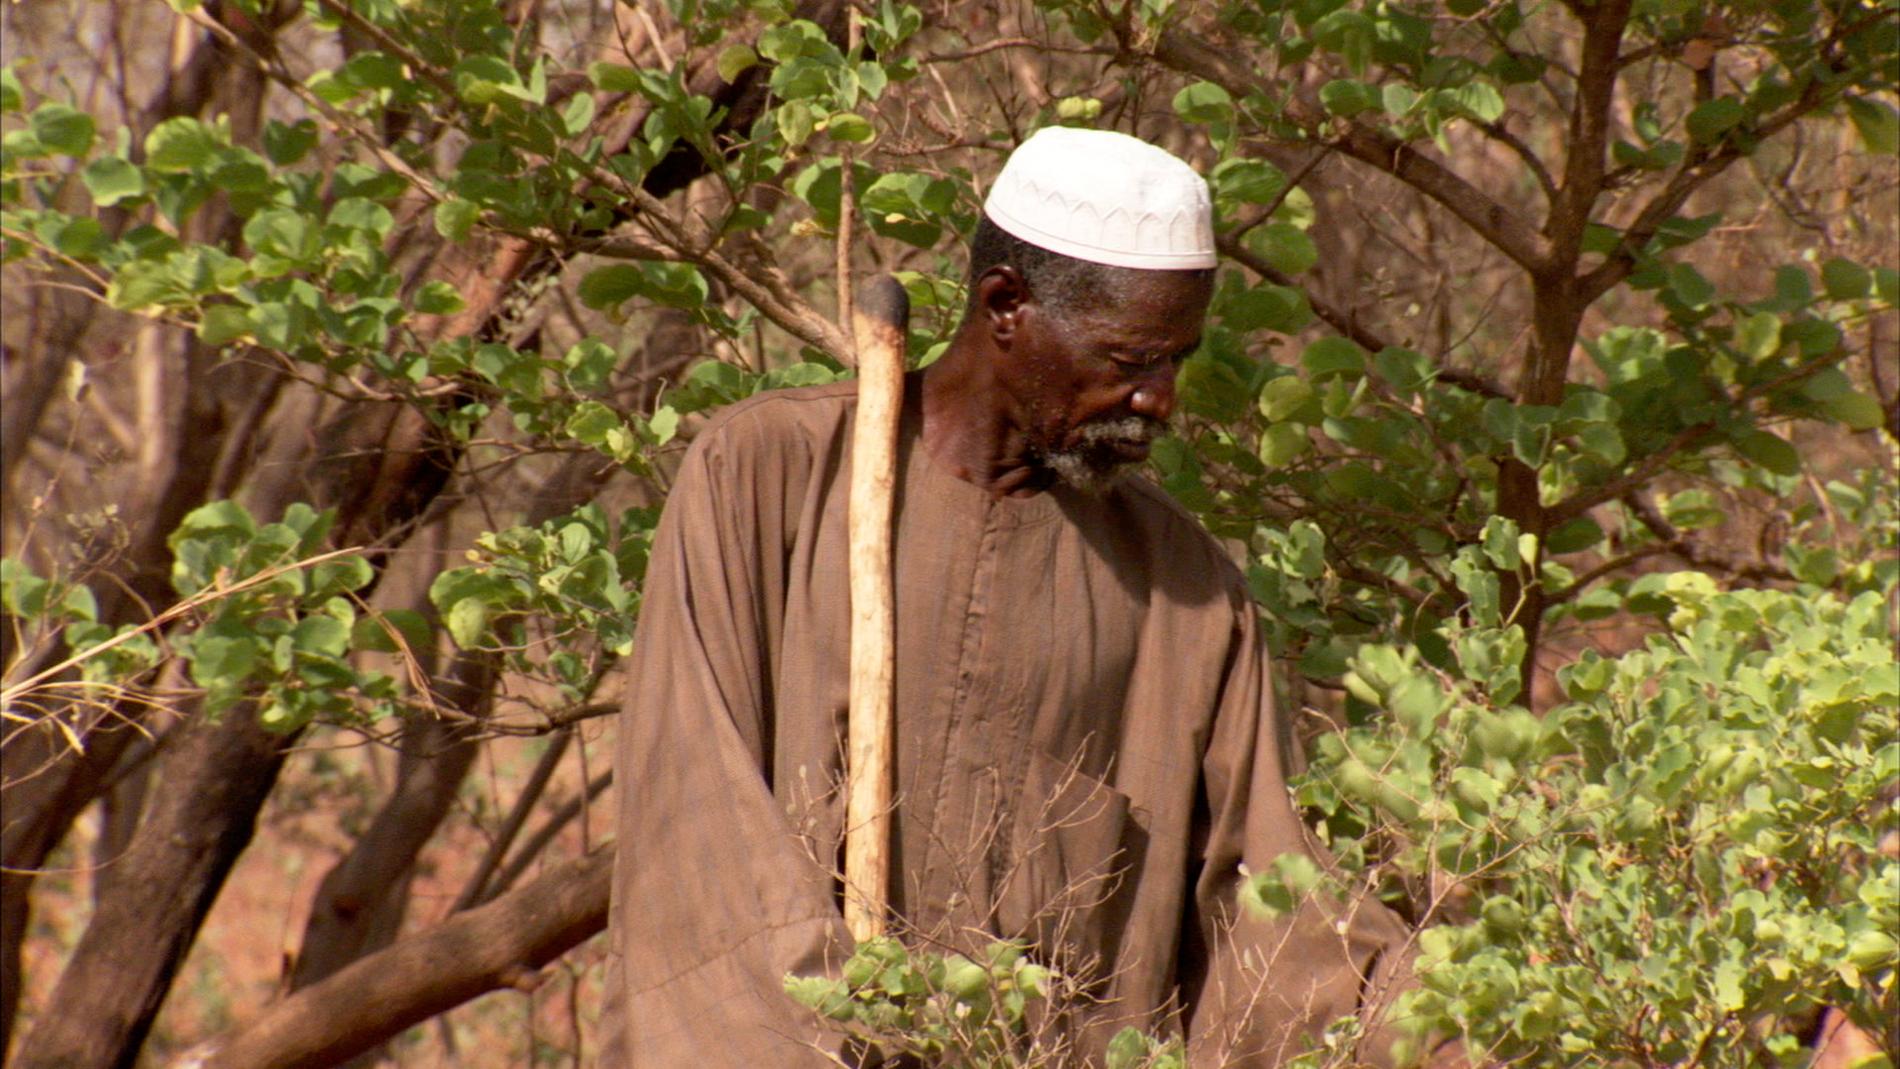 Jordbrukaren Yacouba Sawadogo i sin skog i västafrikanska Burkina Faso, ett land svårt drabbat av torka och matbrist.